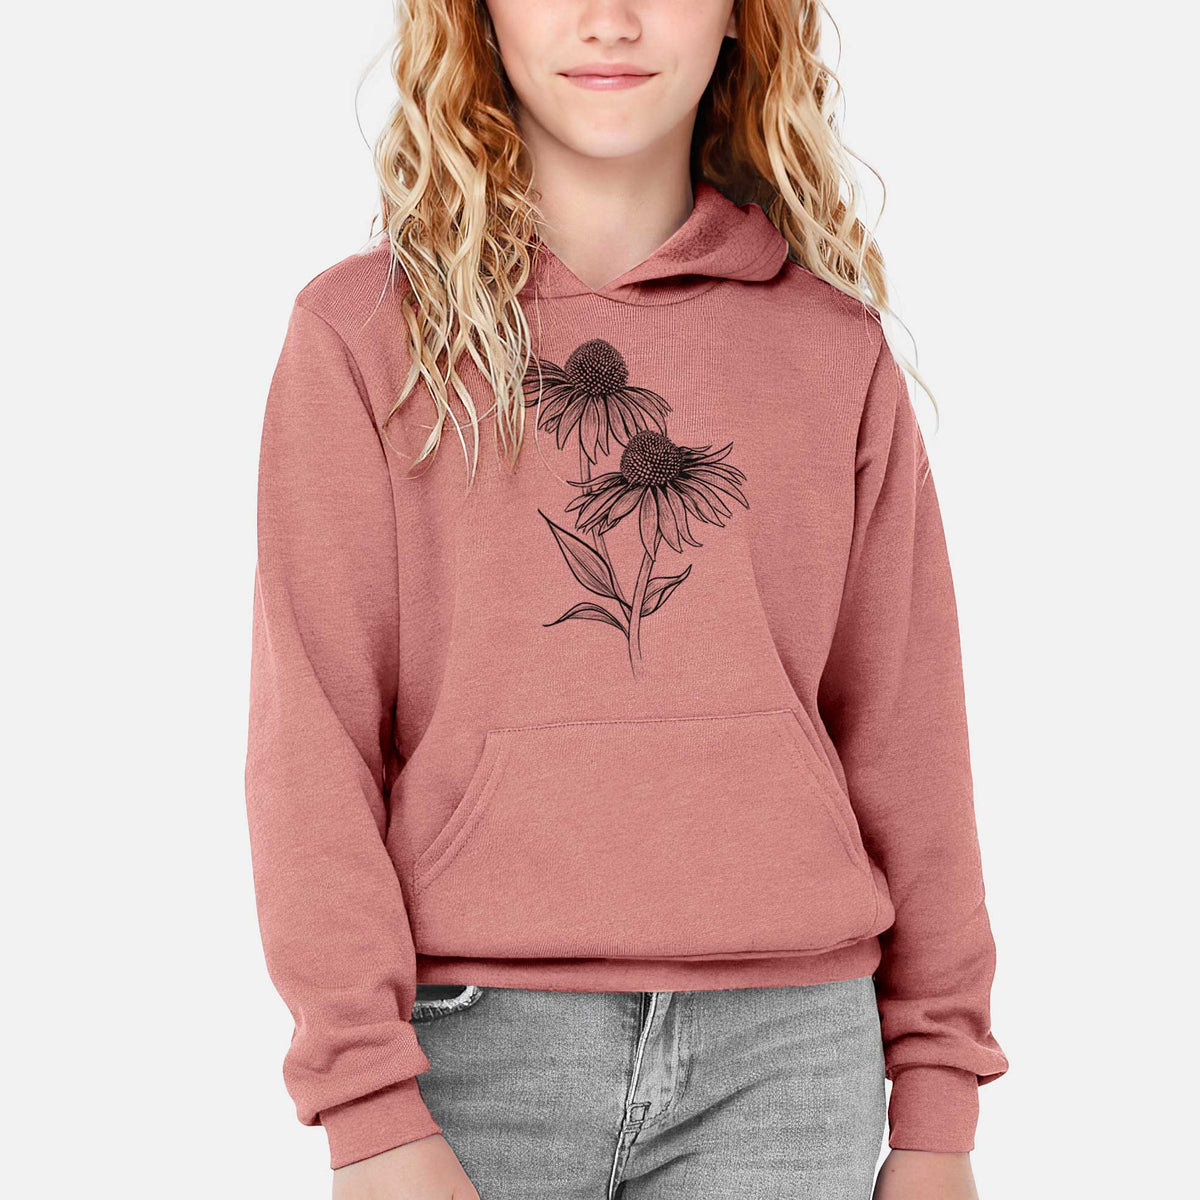 Coneflower - Echinacea purpurea - Youth Hoodie Sweatshirt